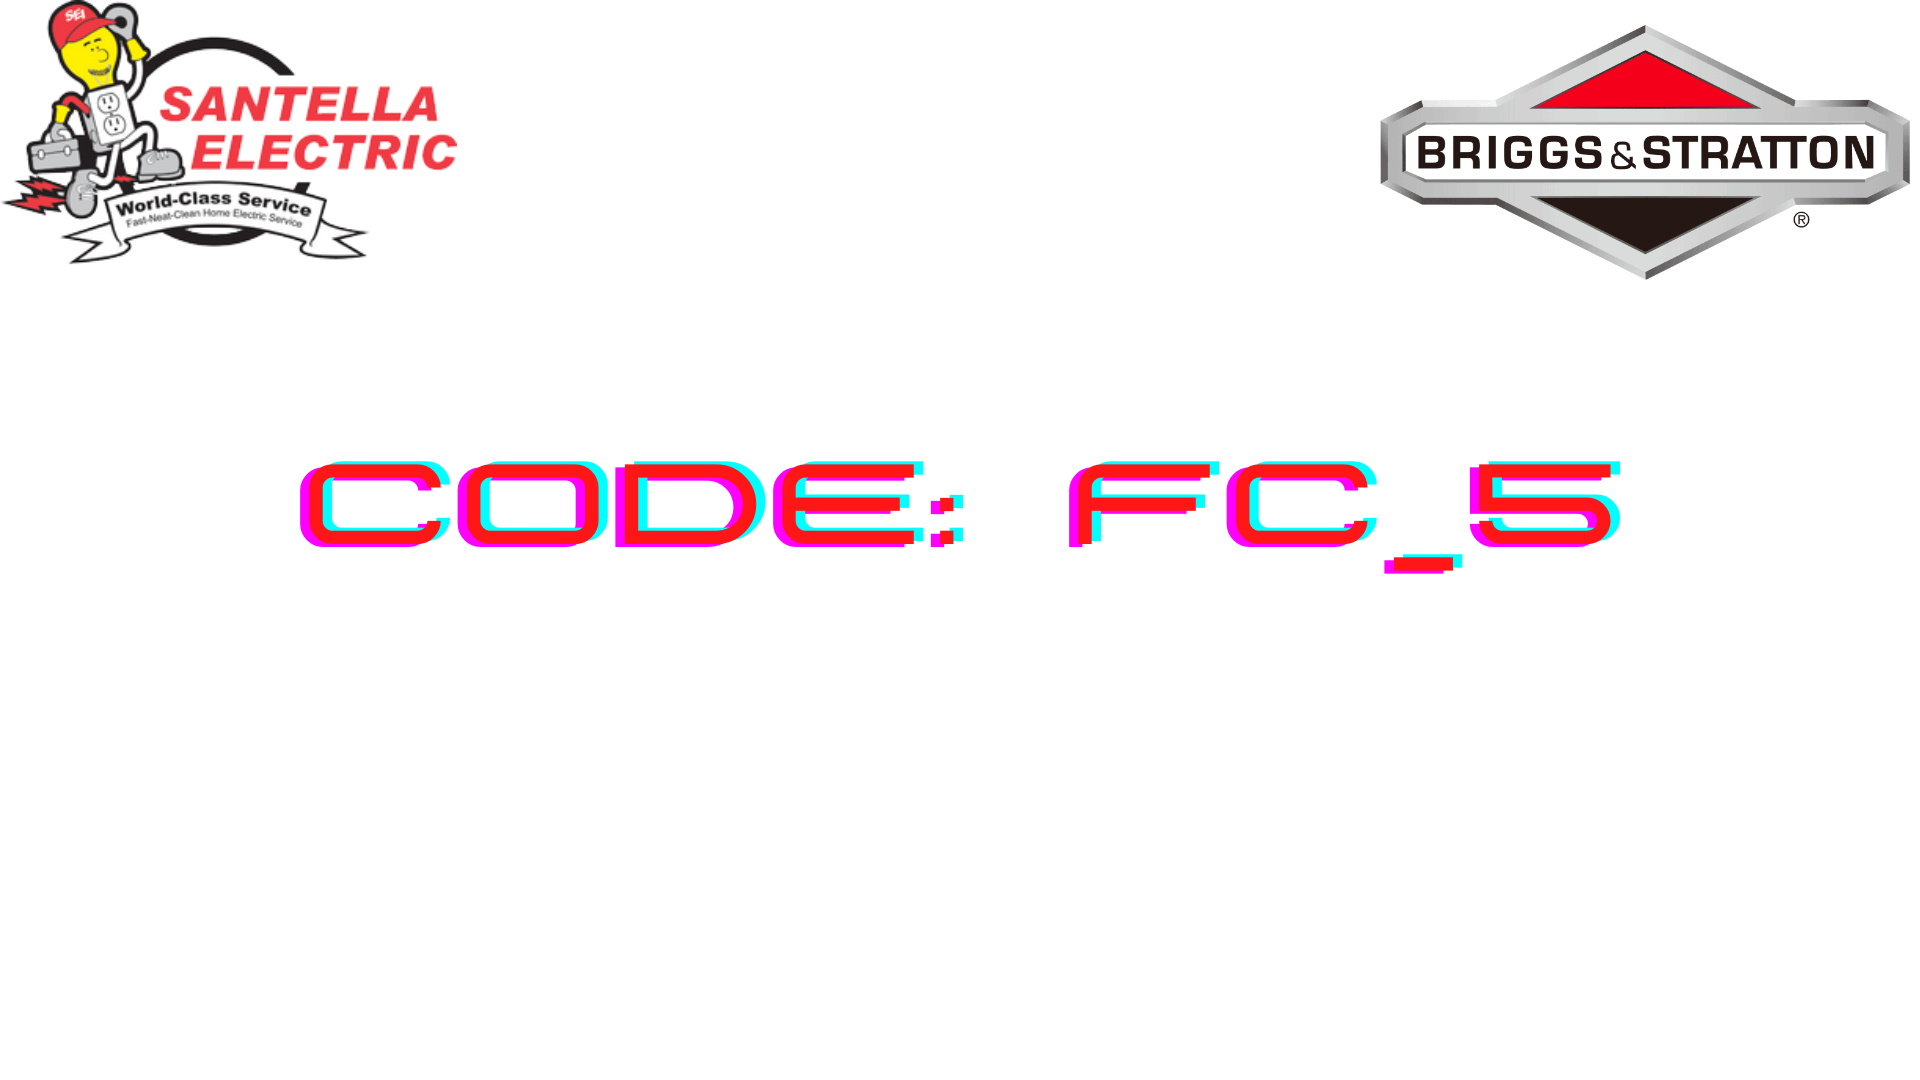 Briggs and Stratton Error Code - Code FC_5